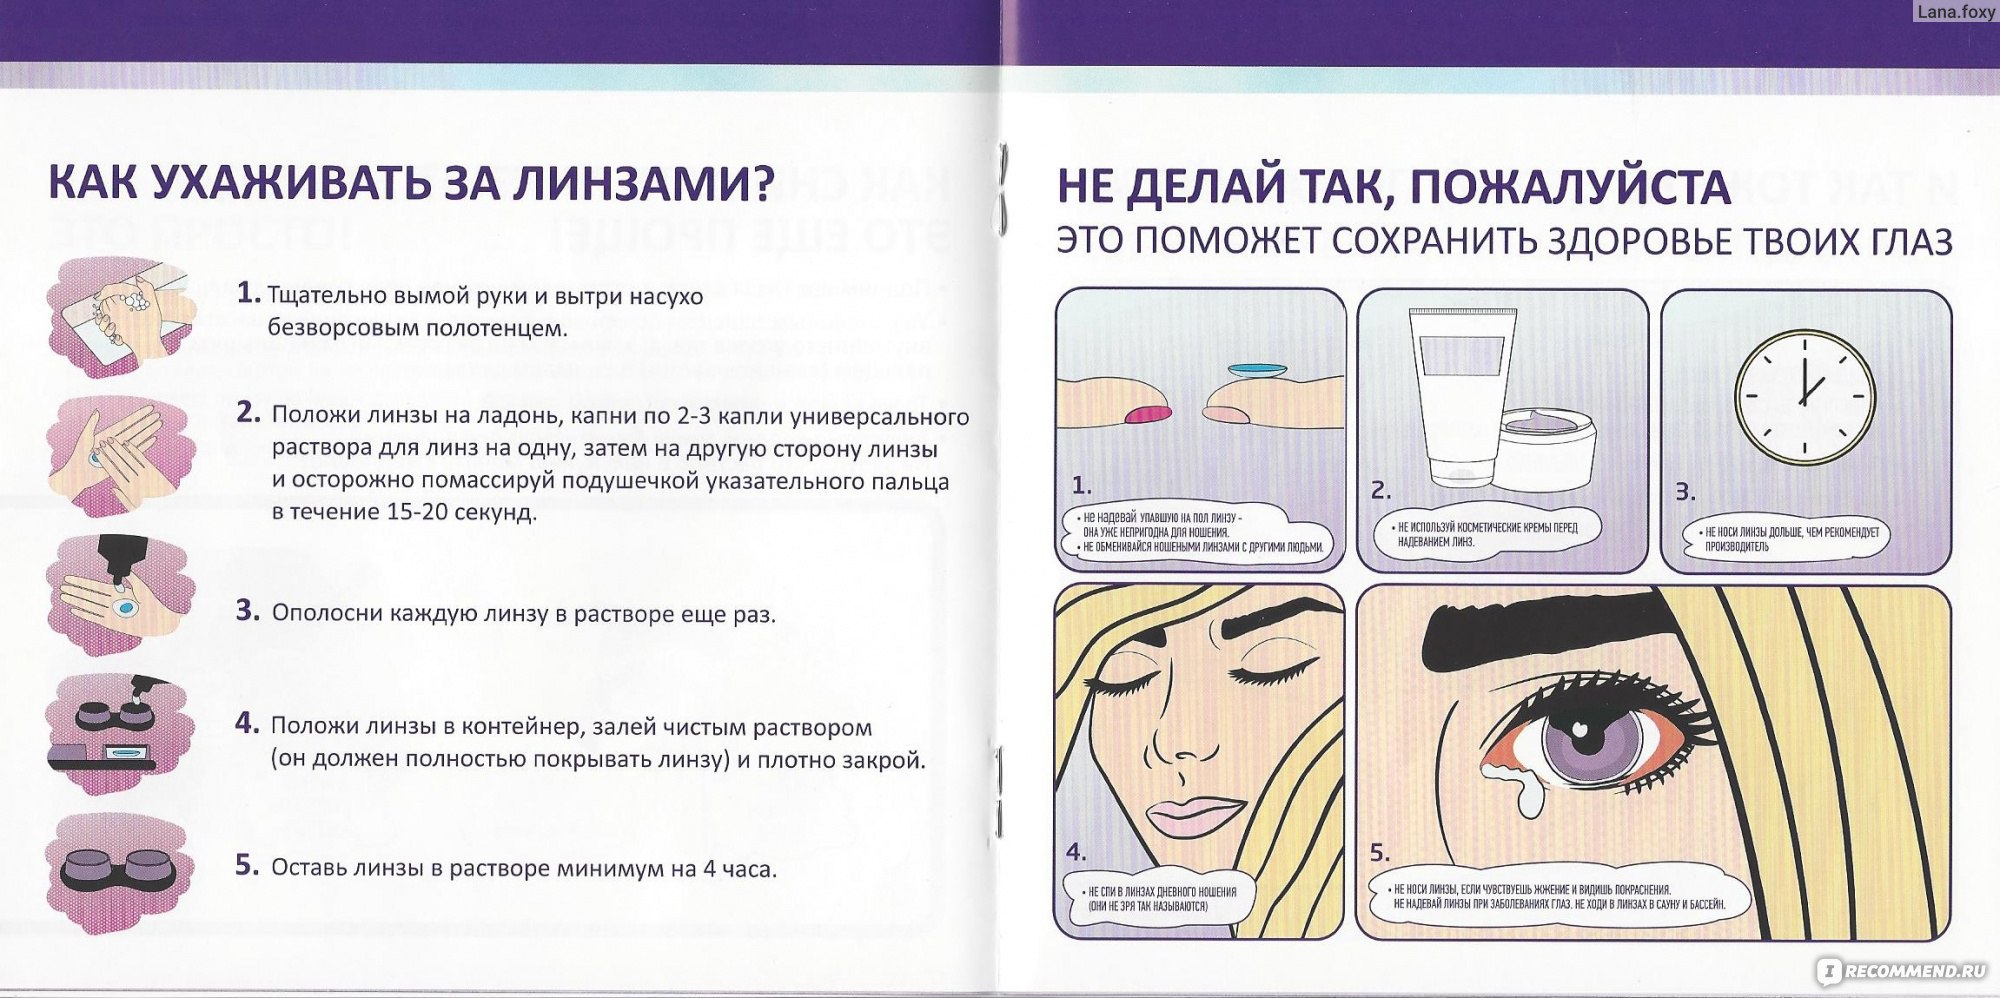 Как ухаживать за линзами для глаз: как хранить, что нужно oculistic.ru
как ухаживать за линзами для глаз: как хранить, что нужно